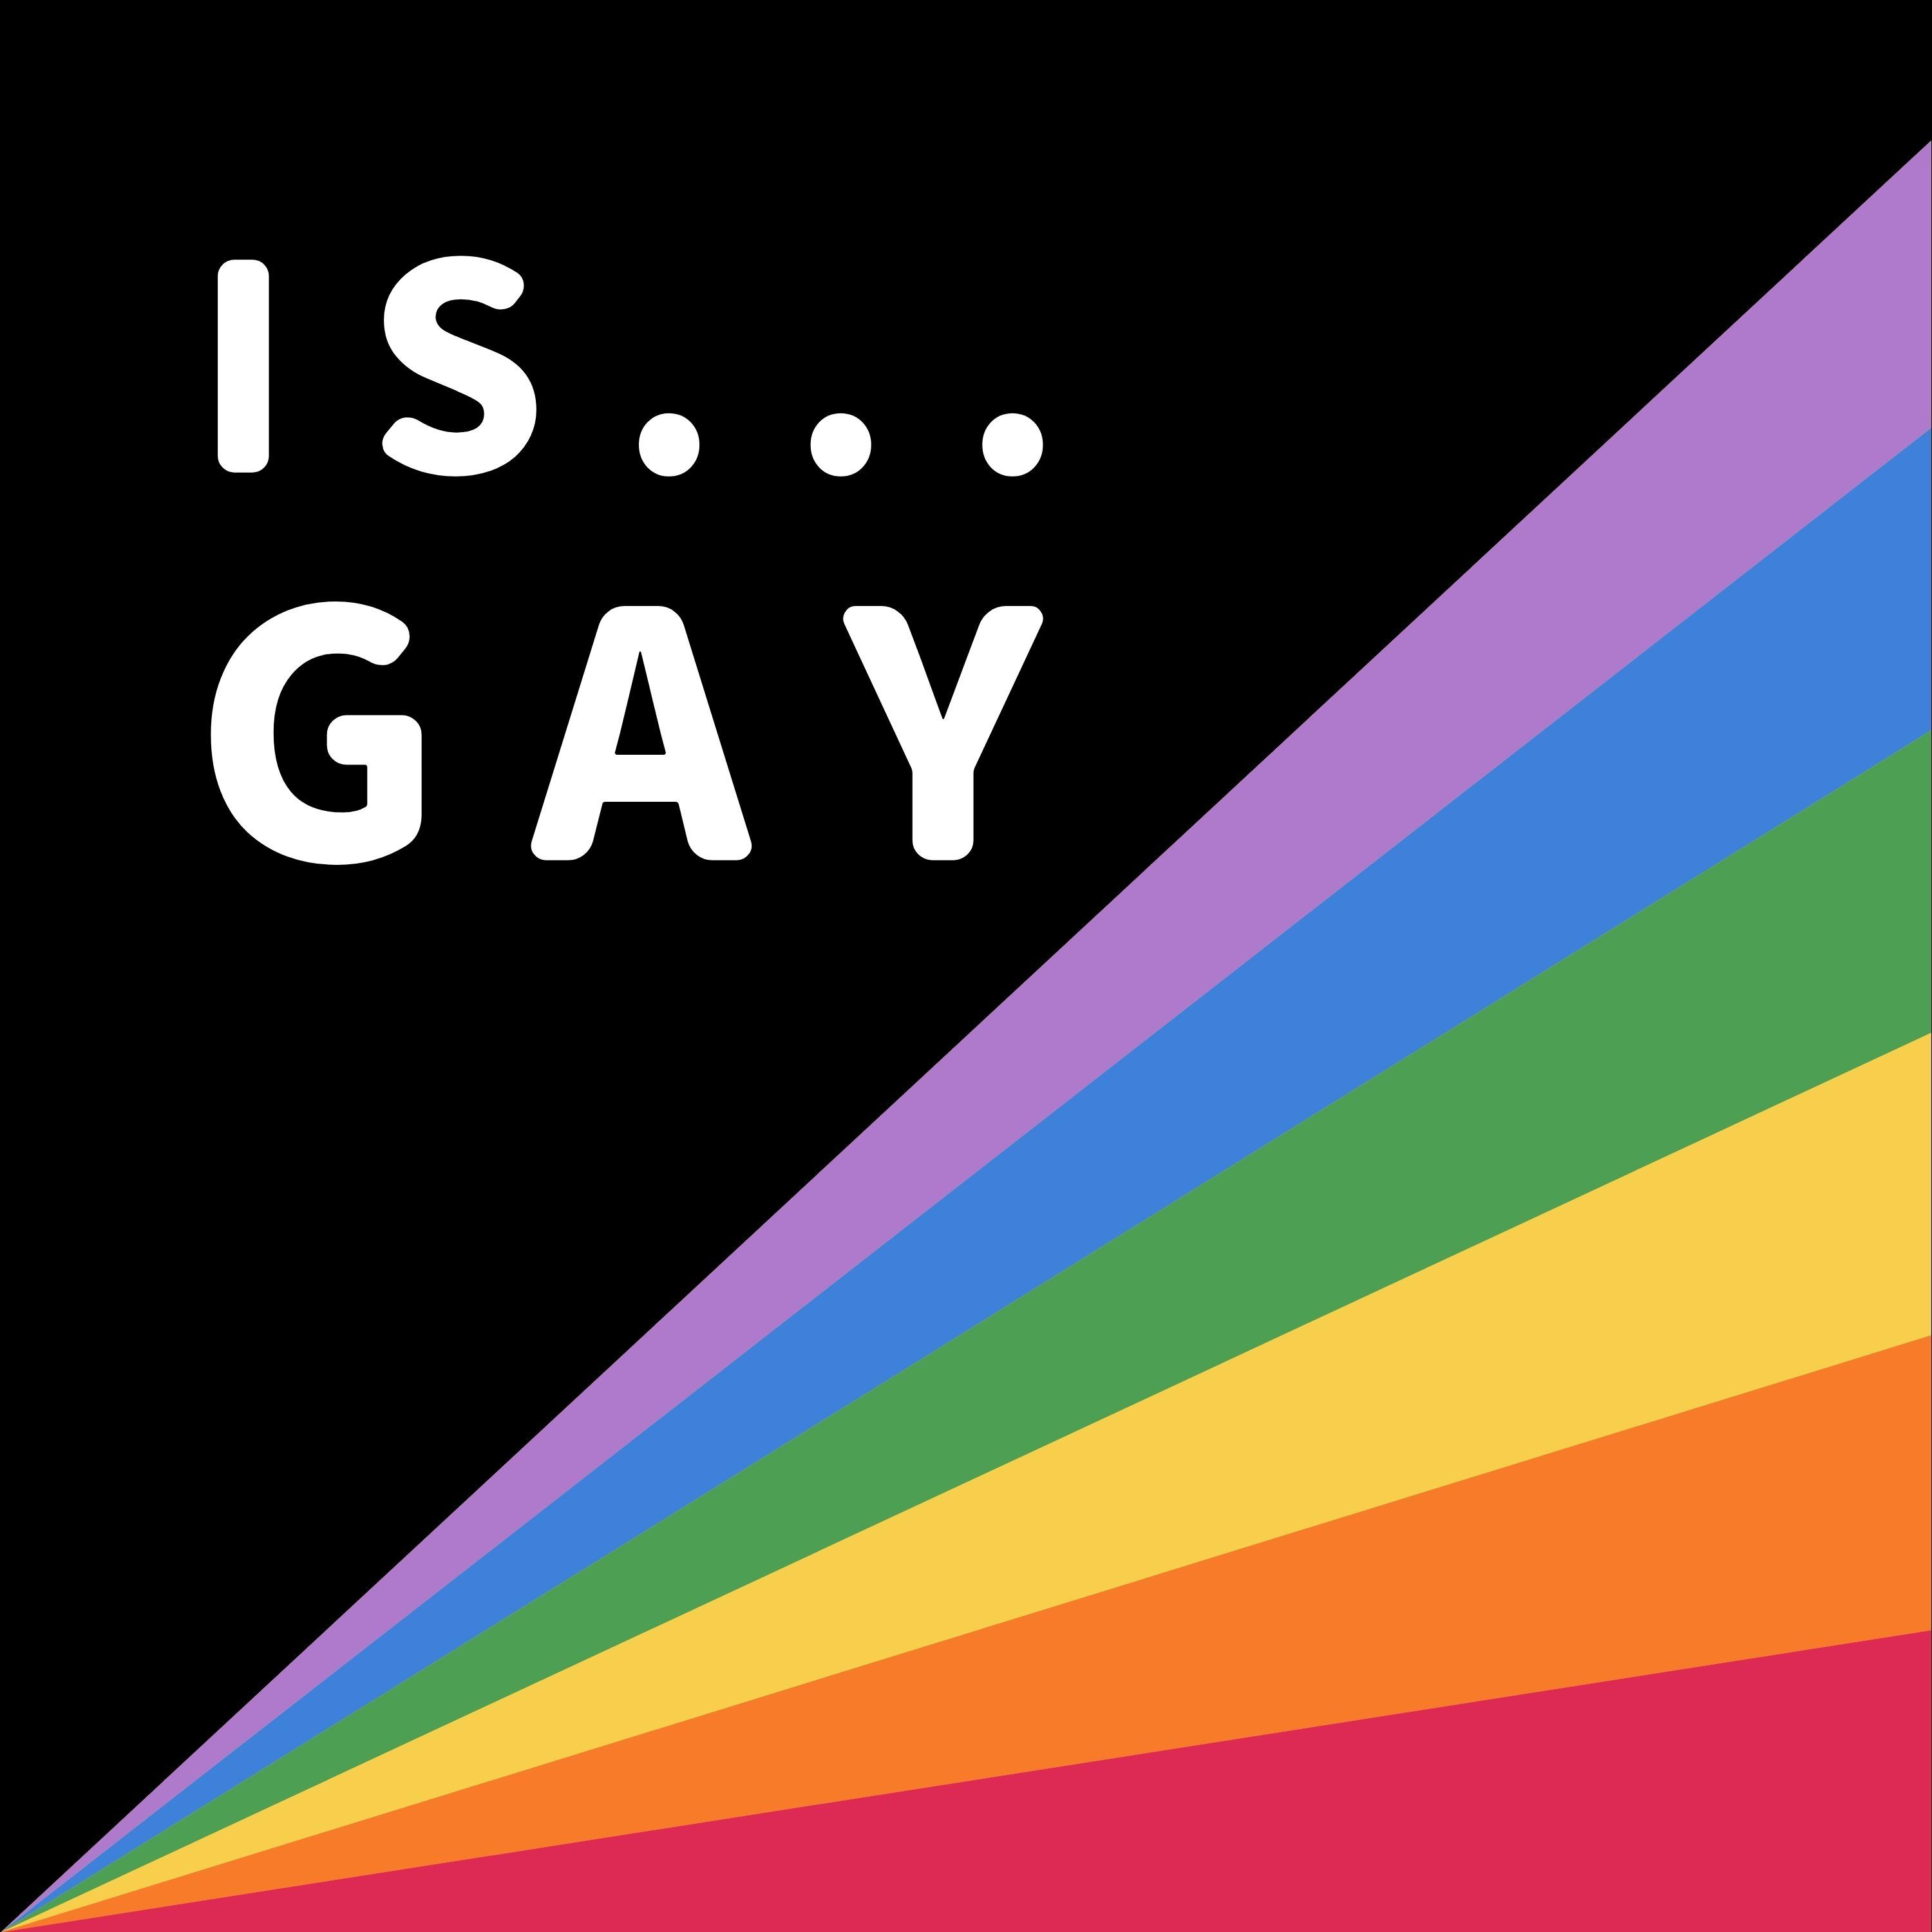 Is It Gay?